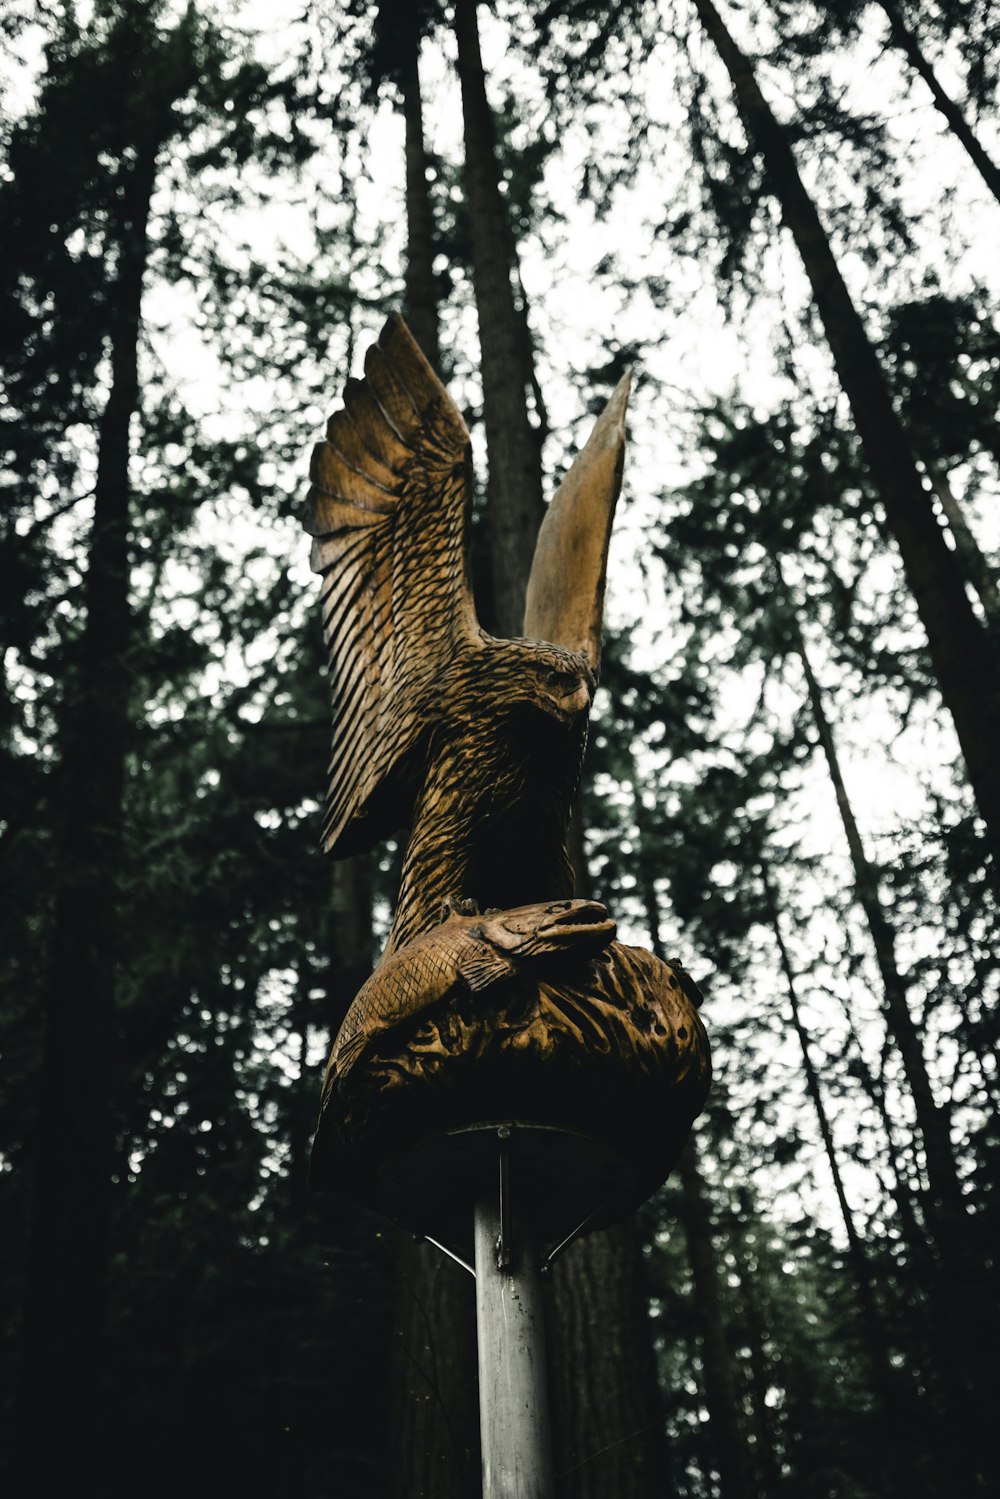 기둥 위에 있는 독수리 동상